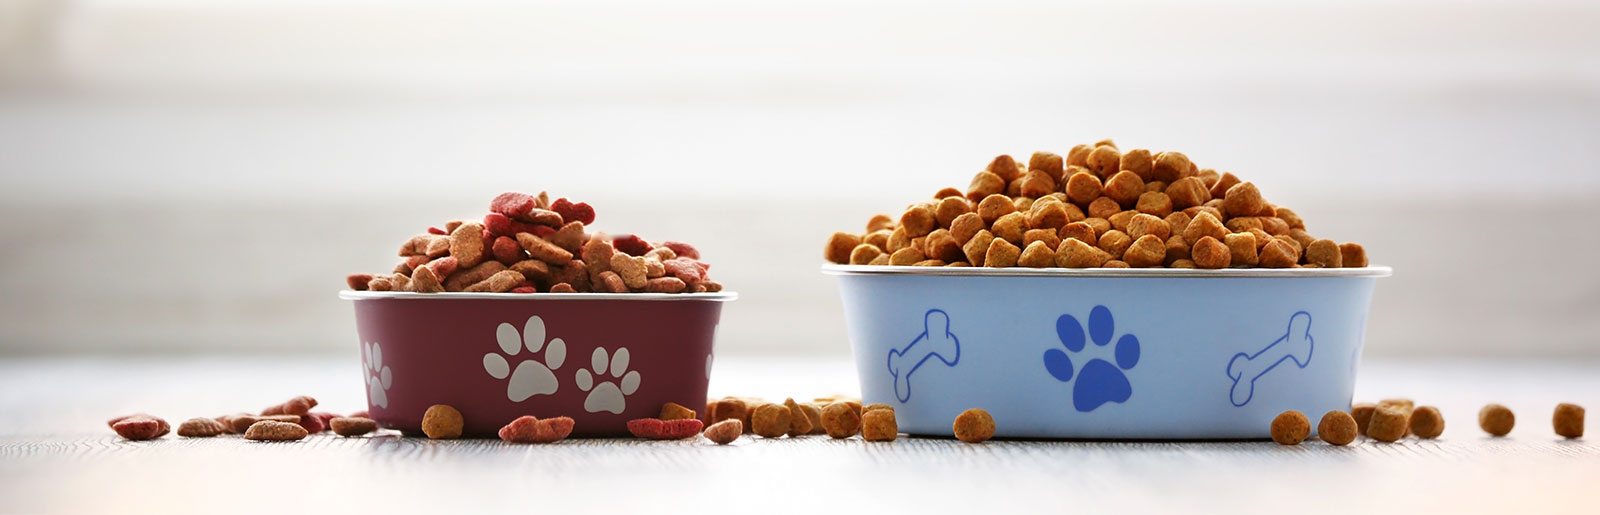 Futter für den Hund testen zum Schutz der Hundegesundheit